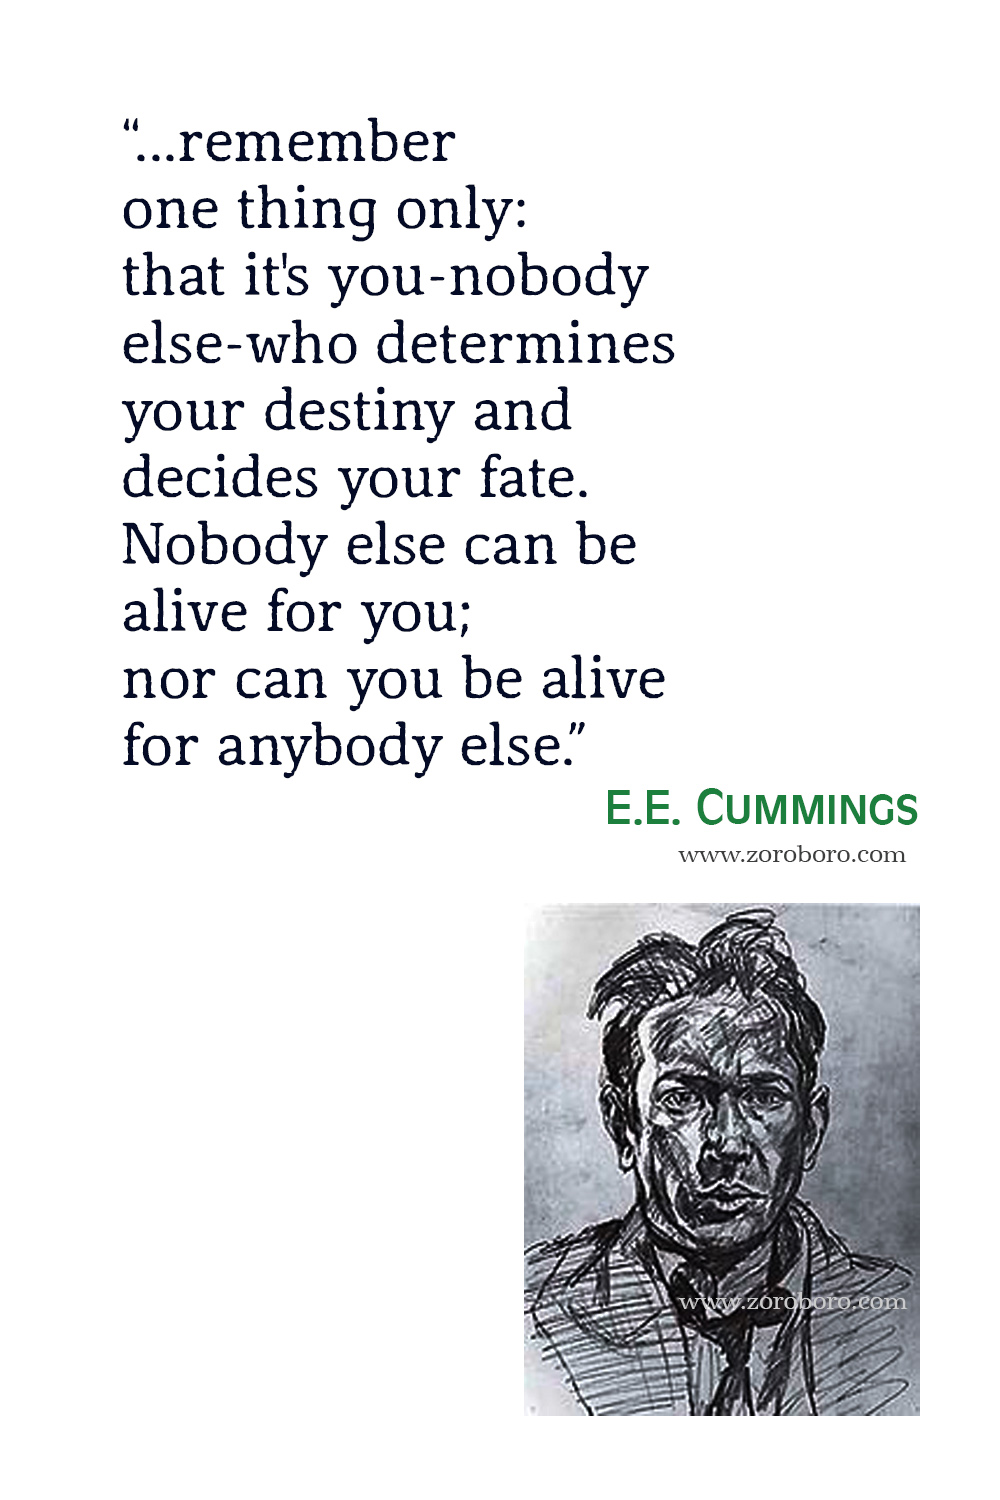 E. E. Cummings Quotes, E. E. Cummings Poems, E. E. Cummings Love Poems, E. E. Cummings Poetry, E. E. Cummings Books, E. E. Cummings.